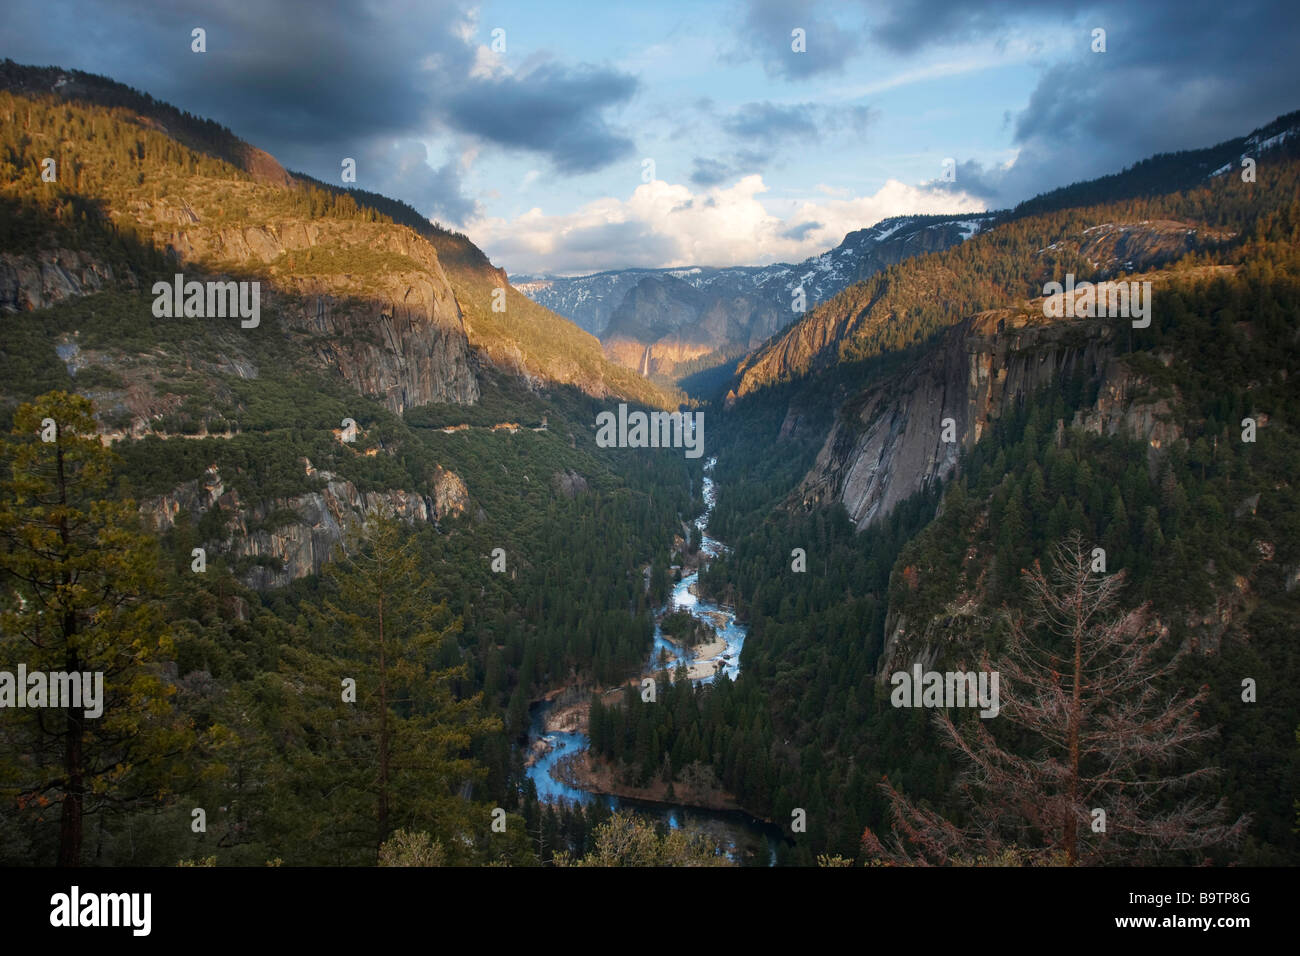 Vista del valle de Yosemite desde el Big Oak Flat Road, el Parque Nacional Yosemite, California, EE.UU. Foto de stock